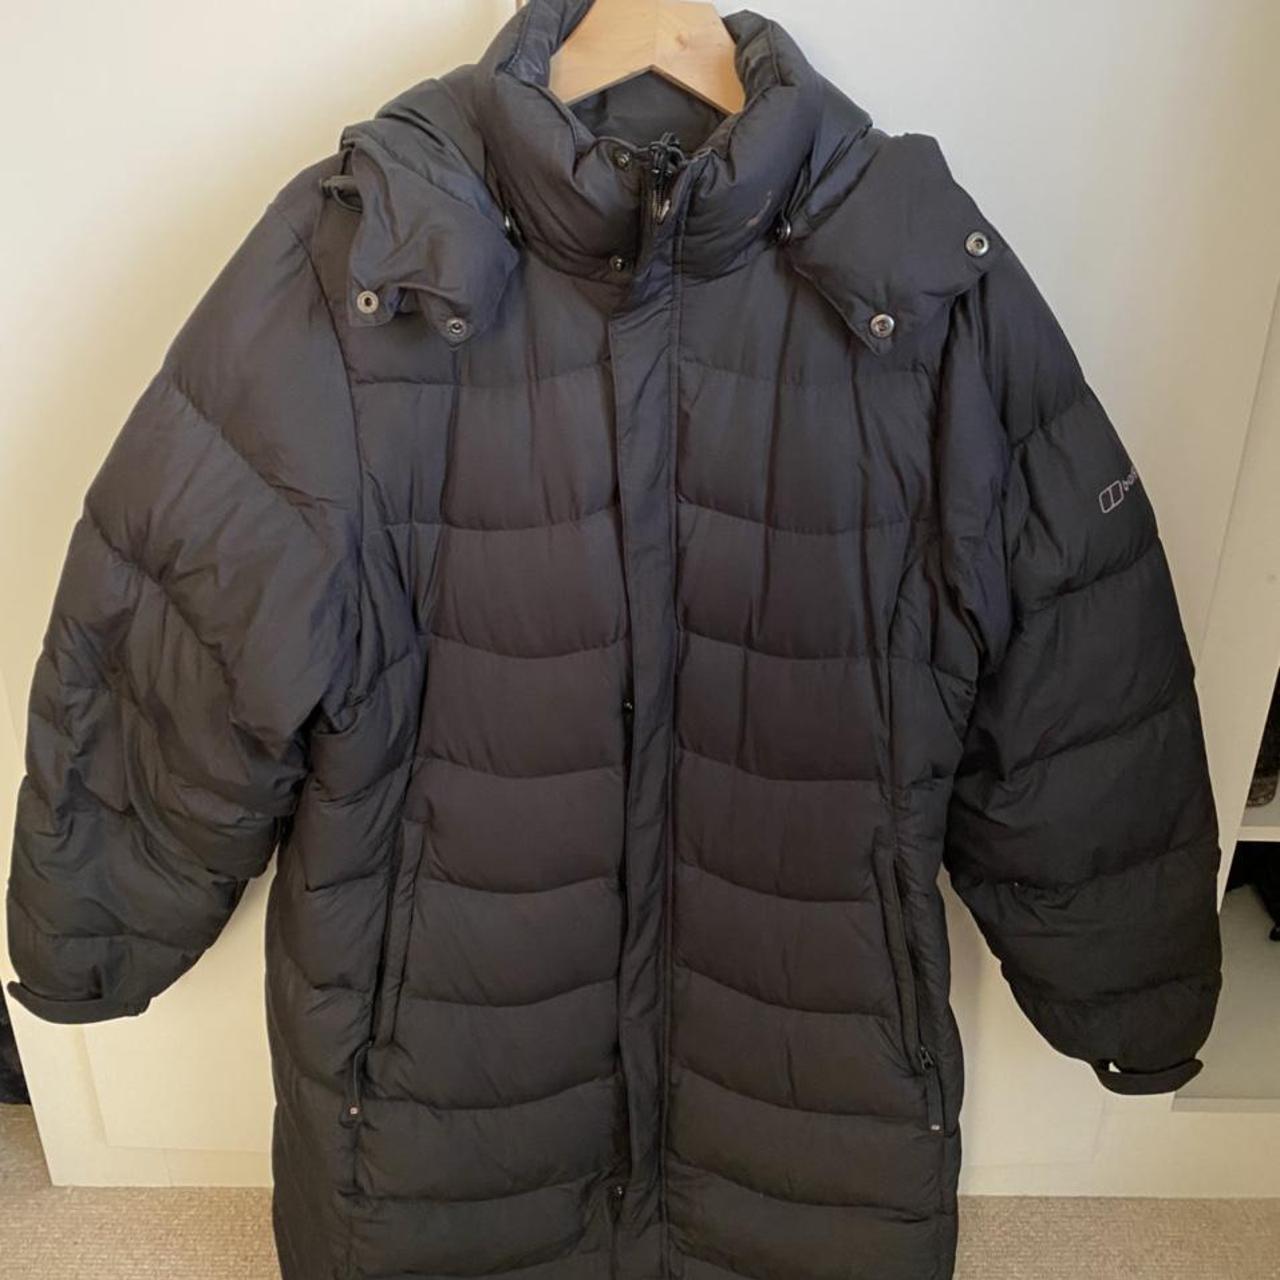 Berghaus Women’s long puffer jacket With detachable... - Depop